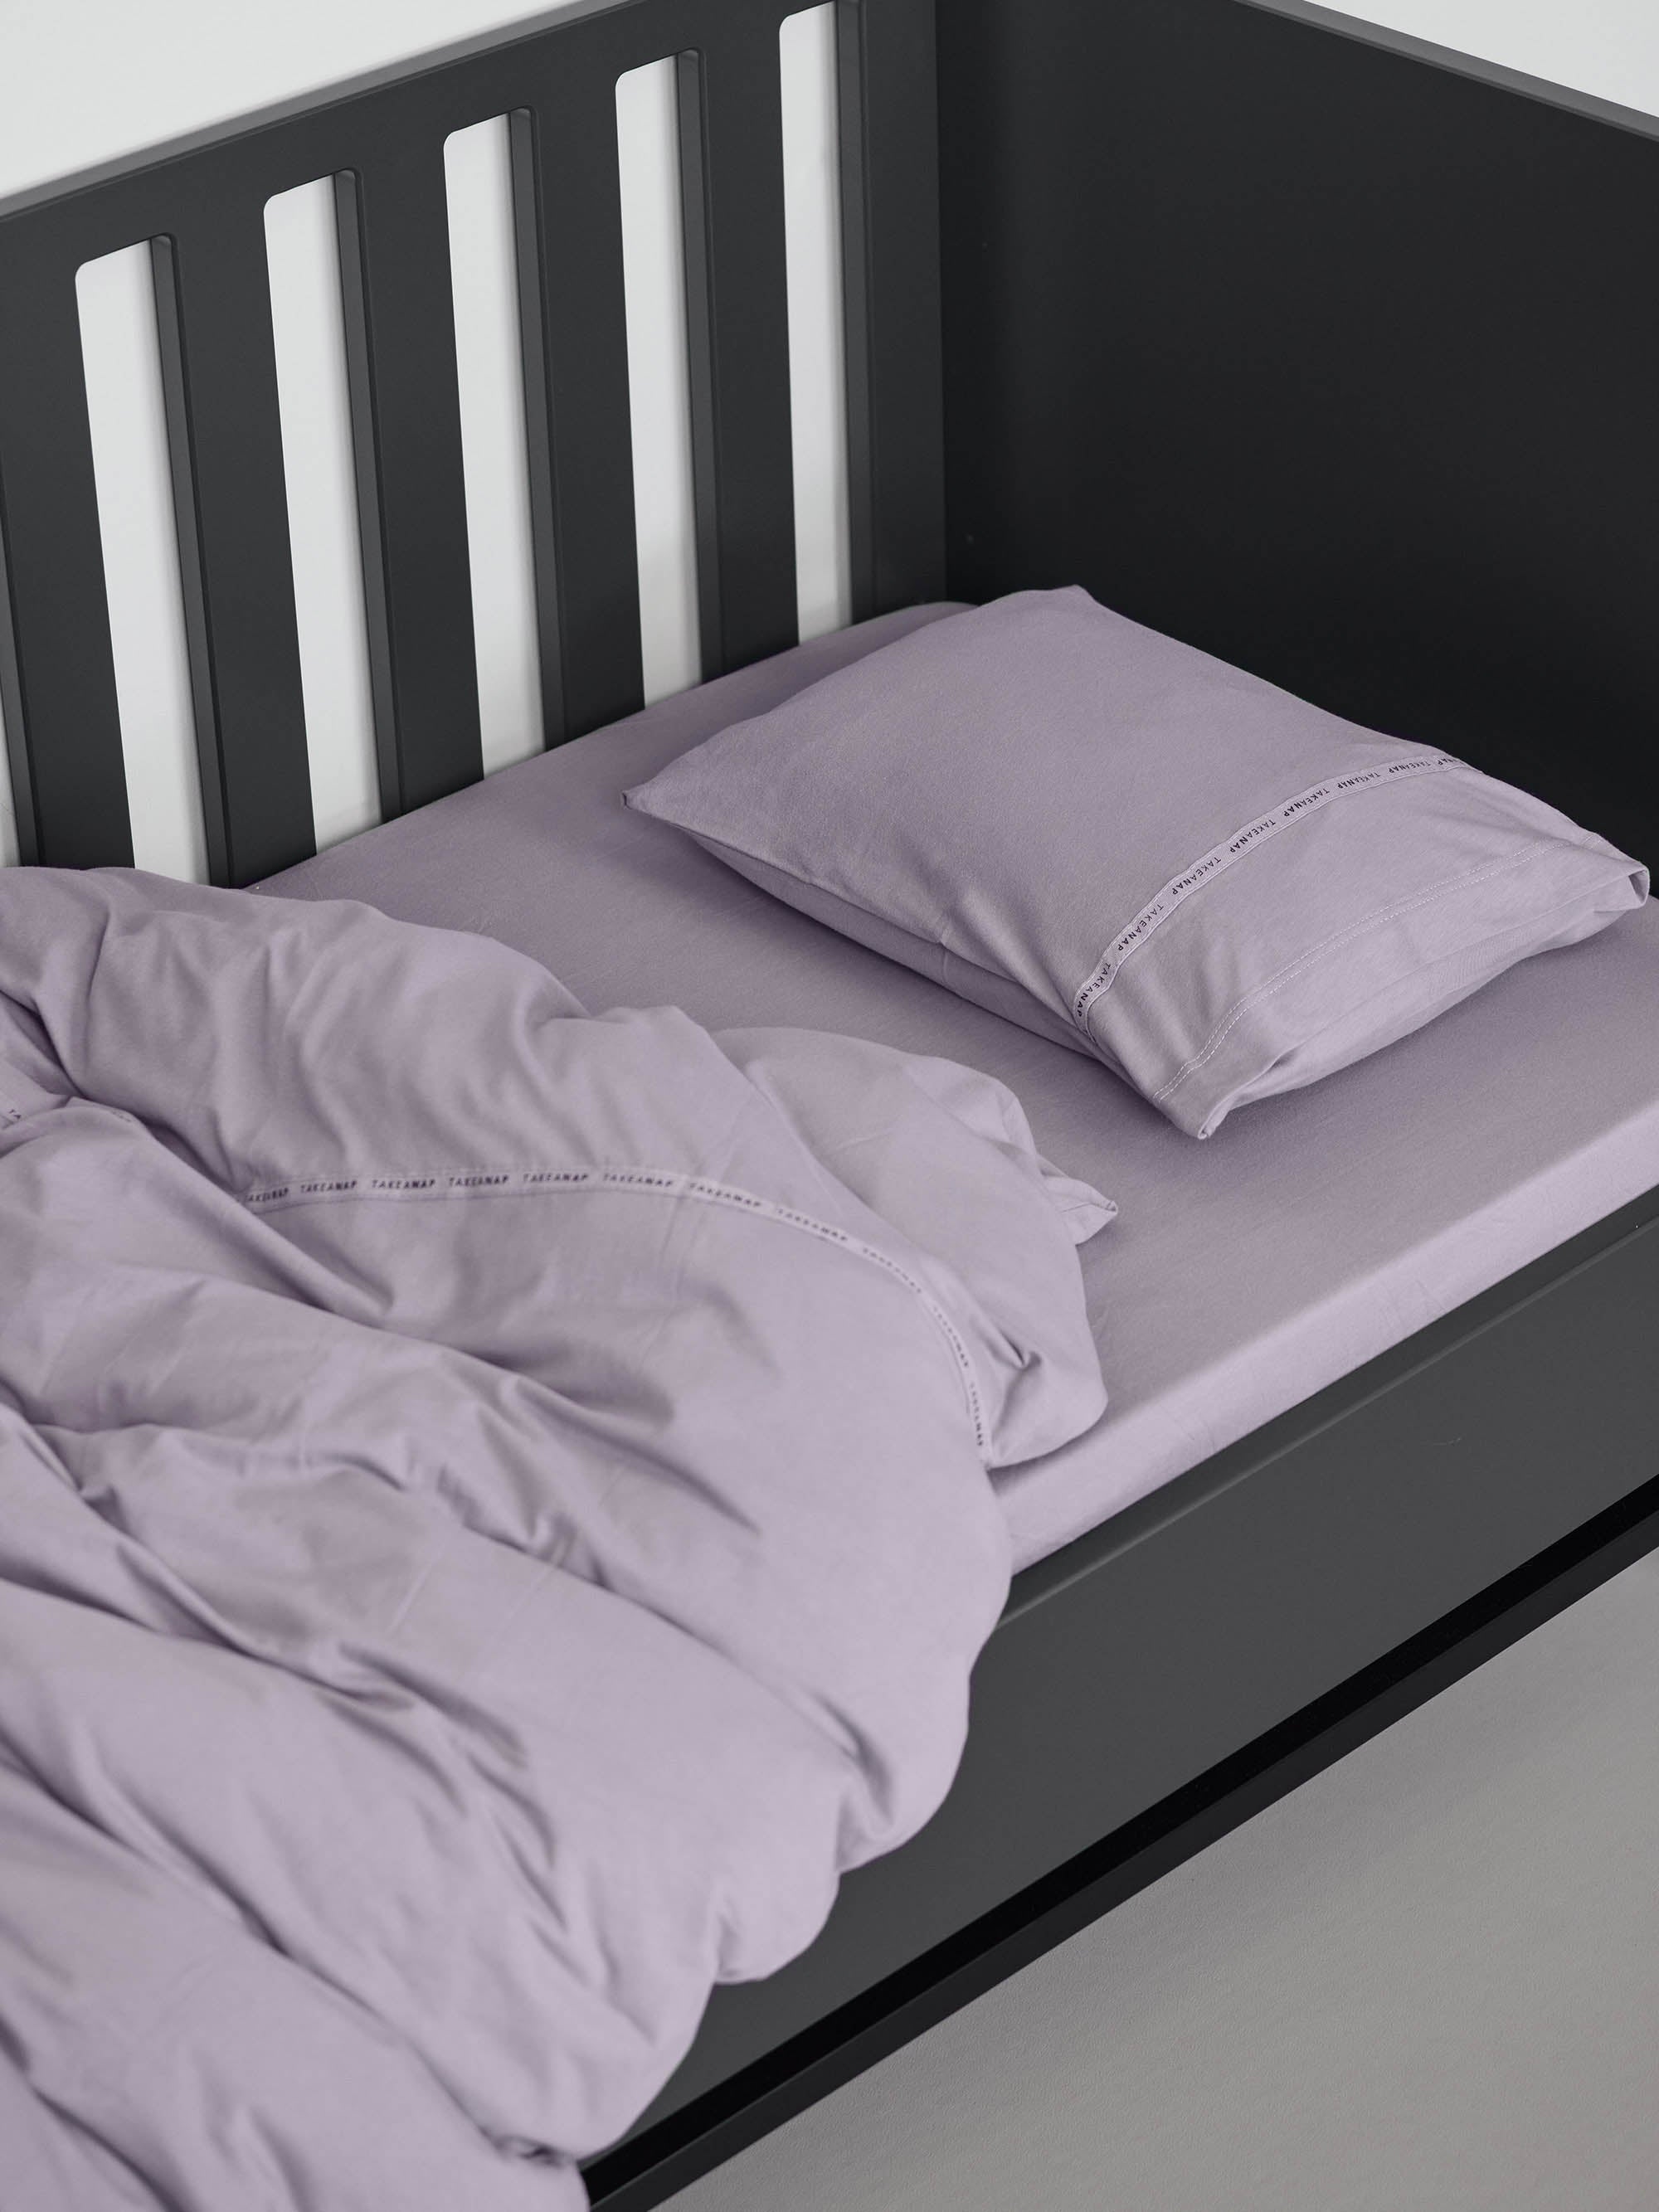 כרית עם ציפית לכרית קטנה בצבע סגול עם שמיכת פוך בתוך מיטת תינוק שחורה